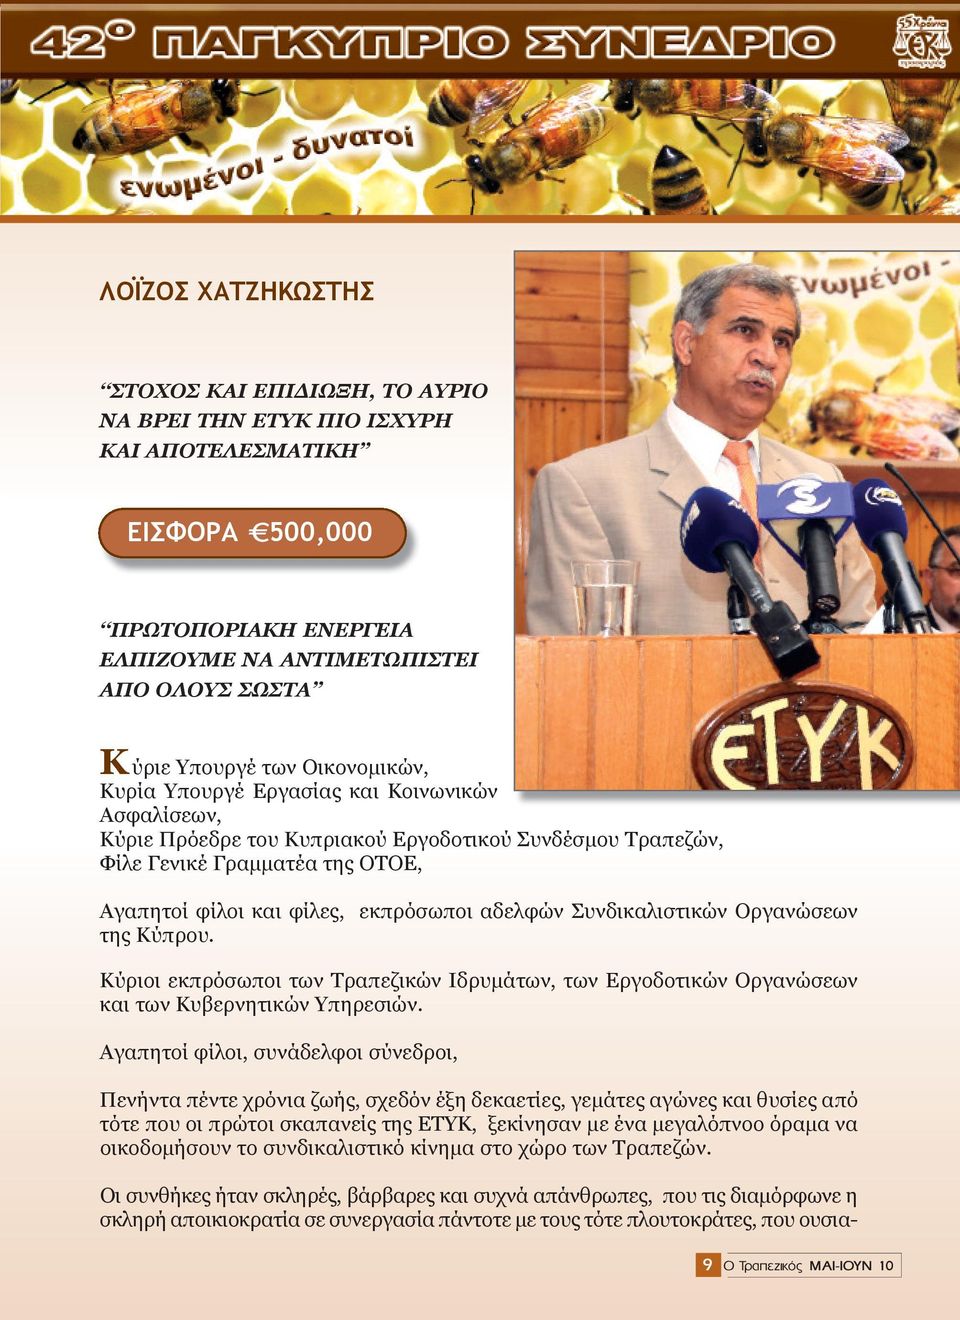 Συνδικαλιστικών Οργανώσεων της Κύπρου. Κύριοι εκπρόσωποι των Τραπεζικών Ιδρυμάτων, των Εργοδοτικών Οργανώσεων και των Κυβερνητικών Υπηρεσιών.